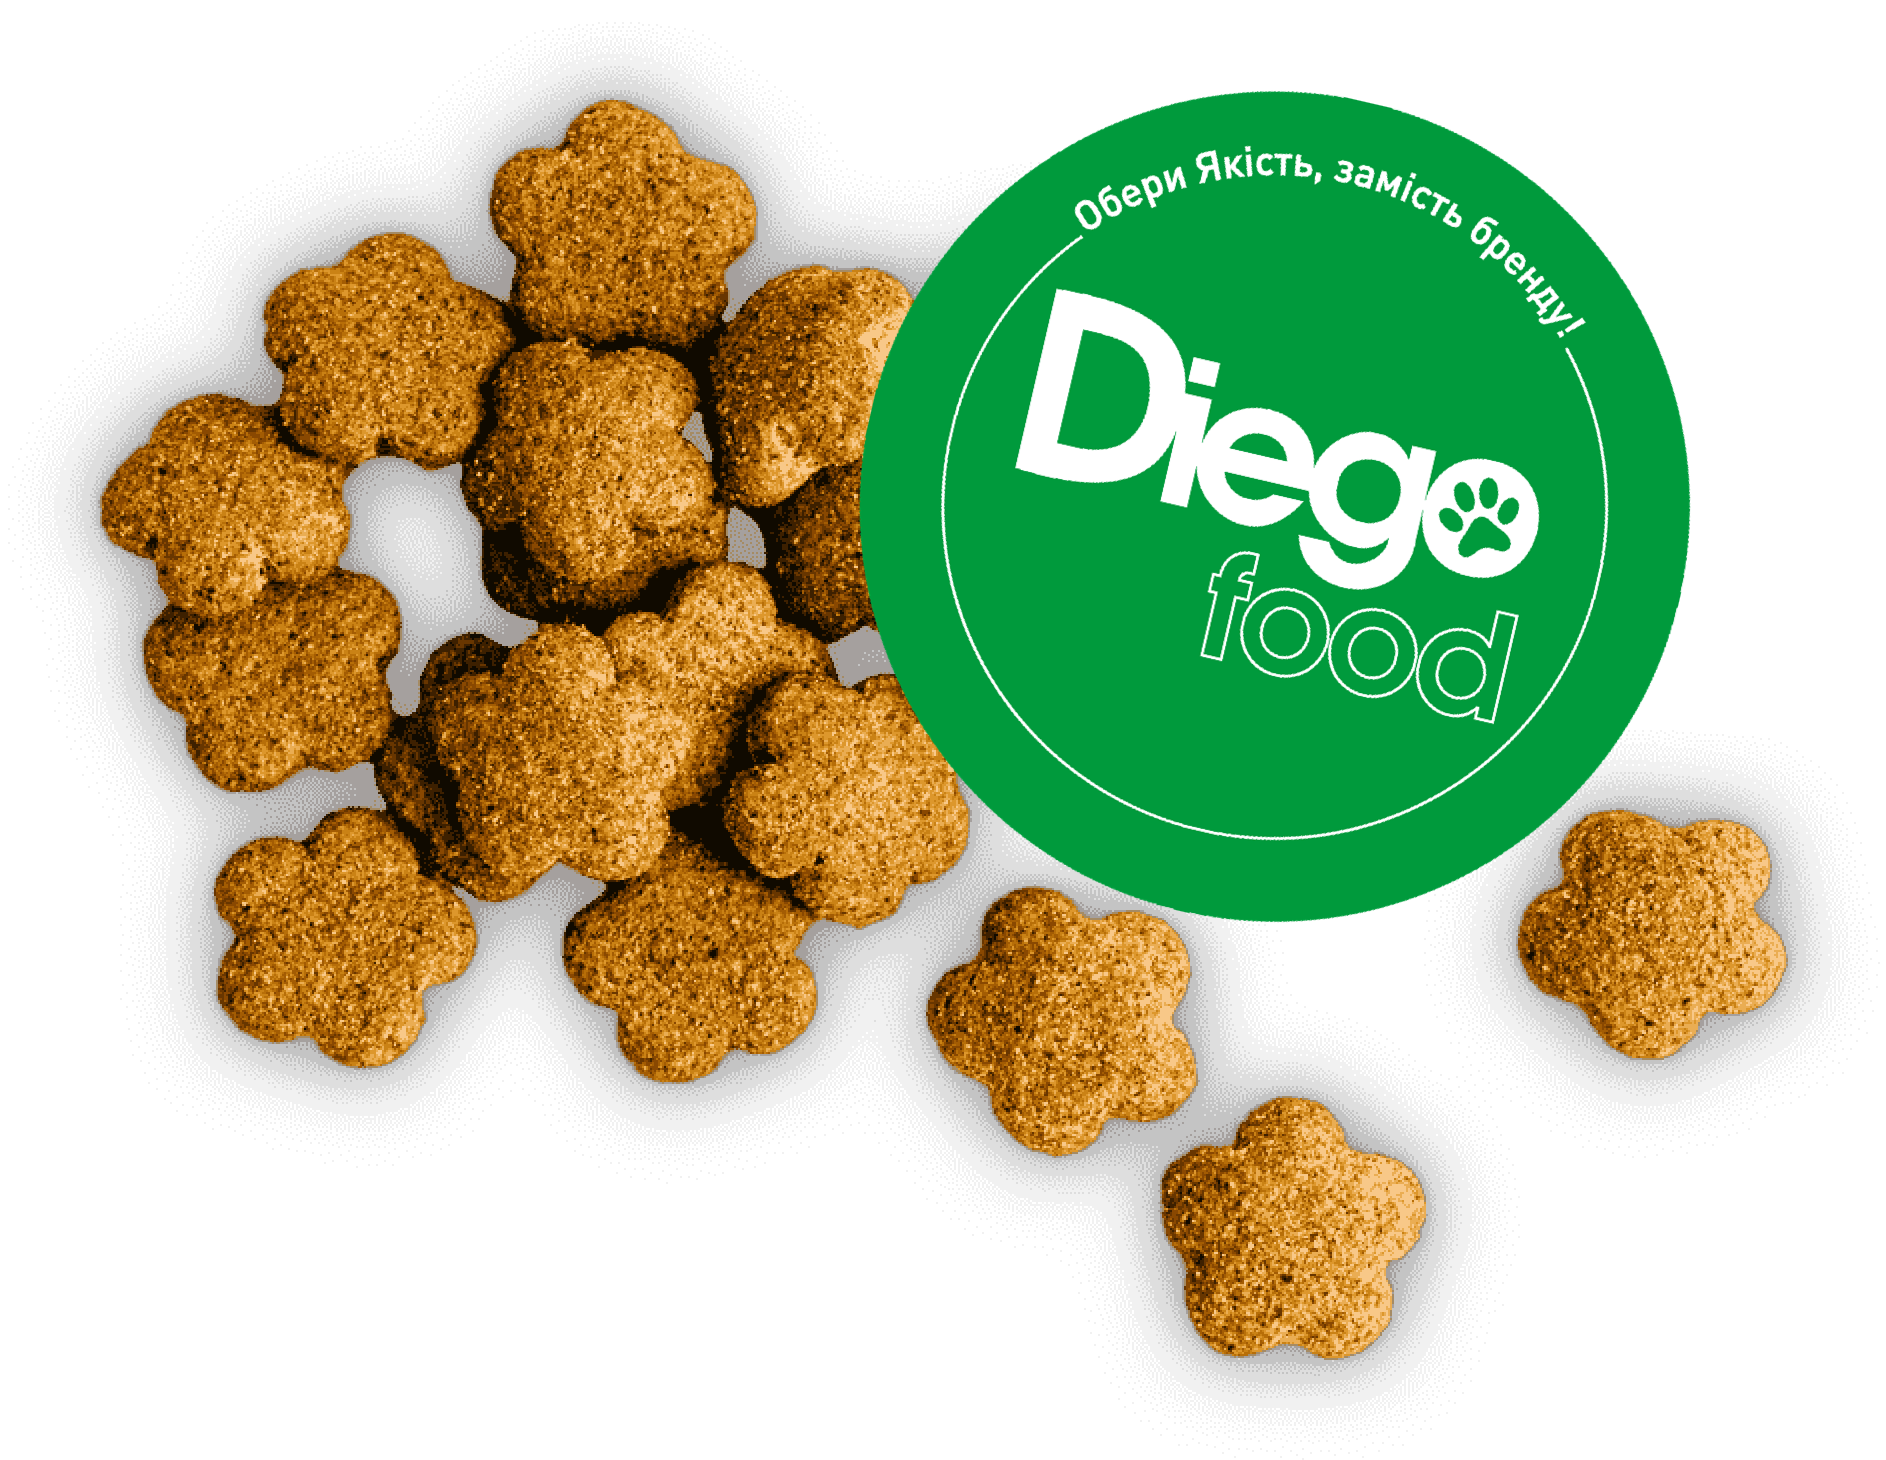 Diego site logo